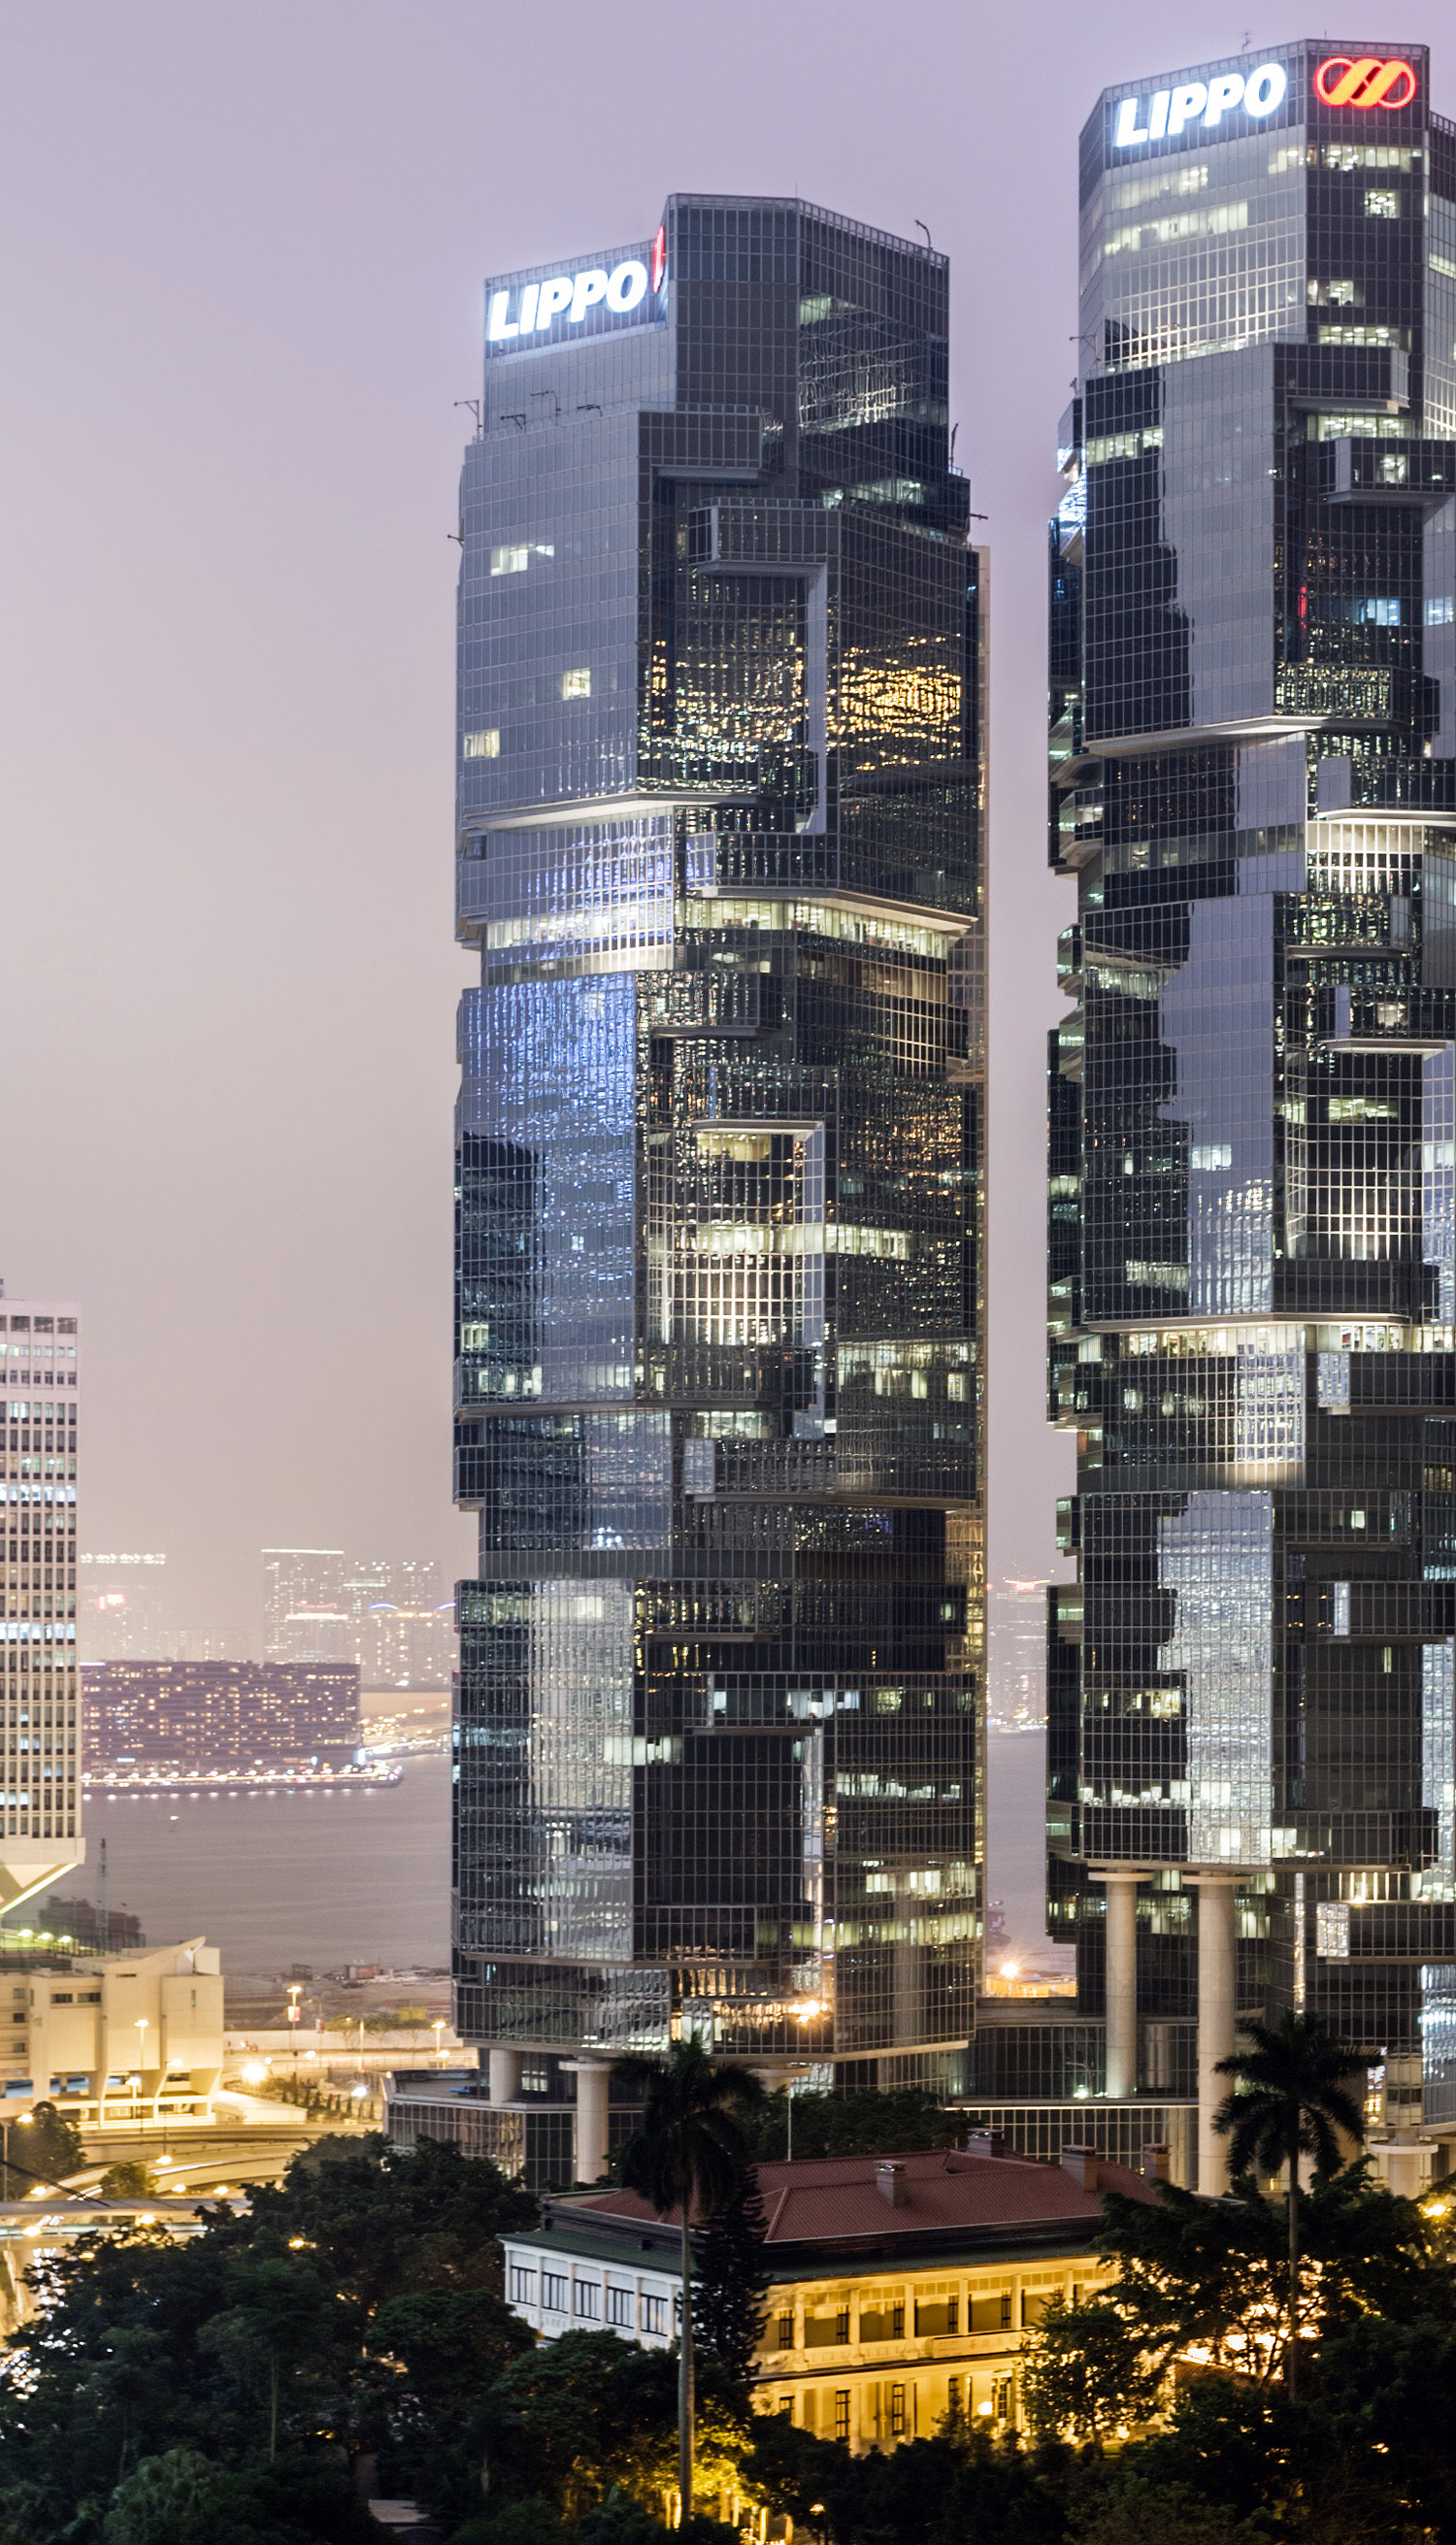 Peregrine Tower at Lippo Centre, Hong Kong - View from Hong Kong Park Vantage Point. © Mathias Beinling